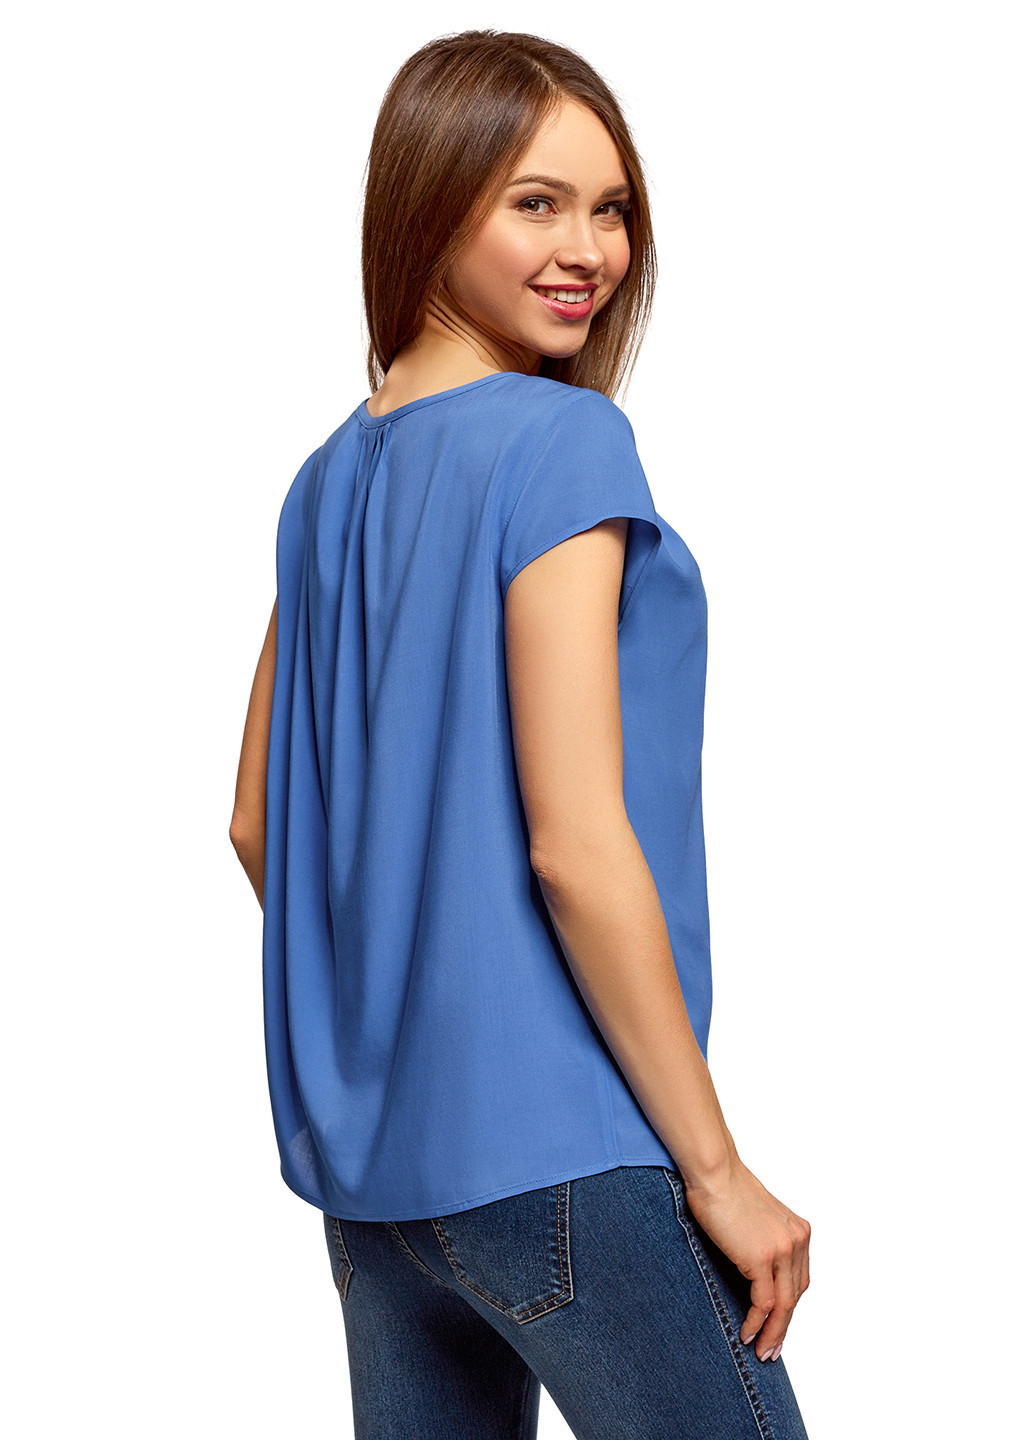 Синяя летняя блуза Oodji